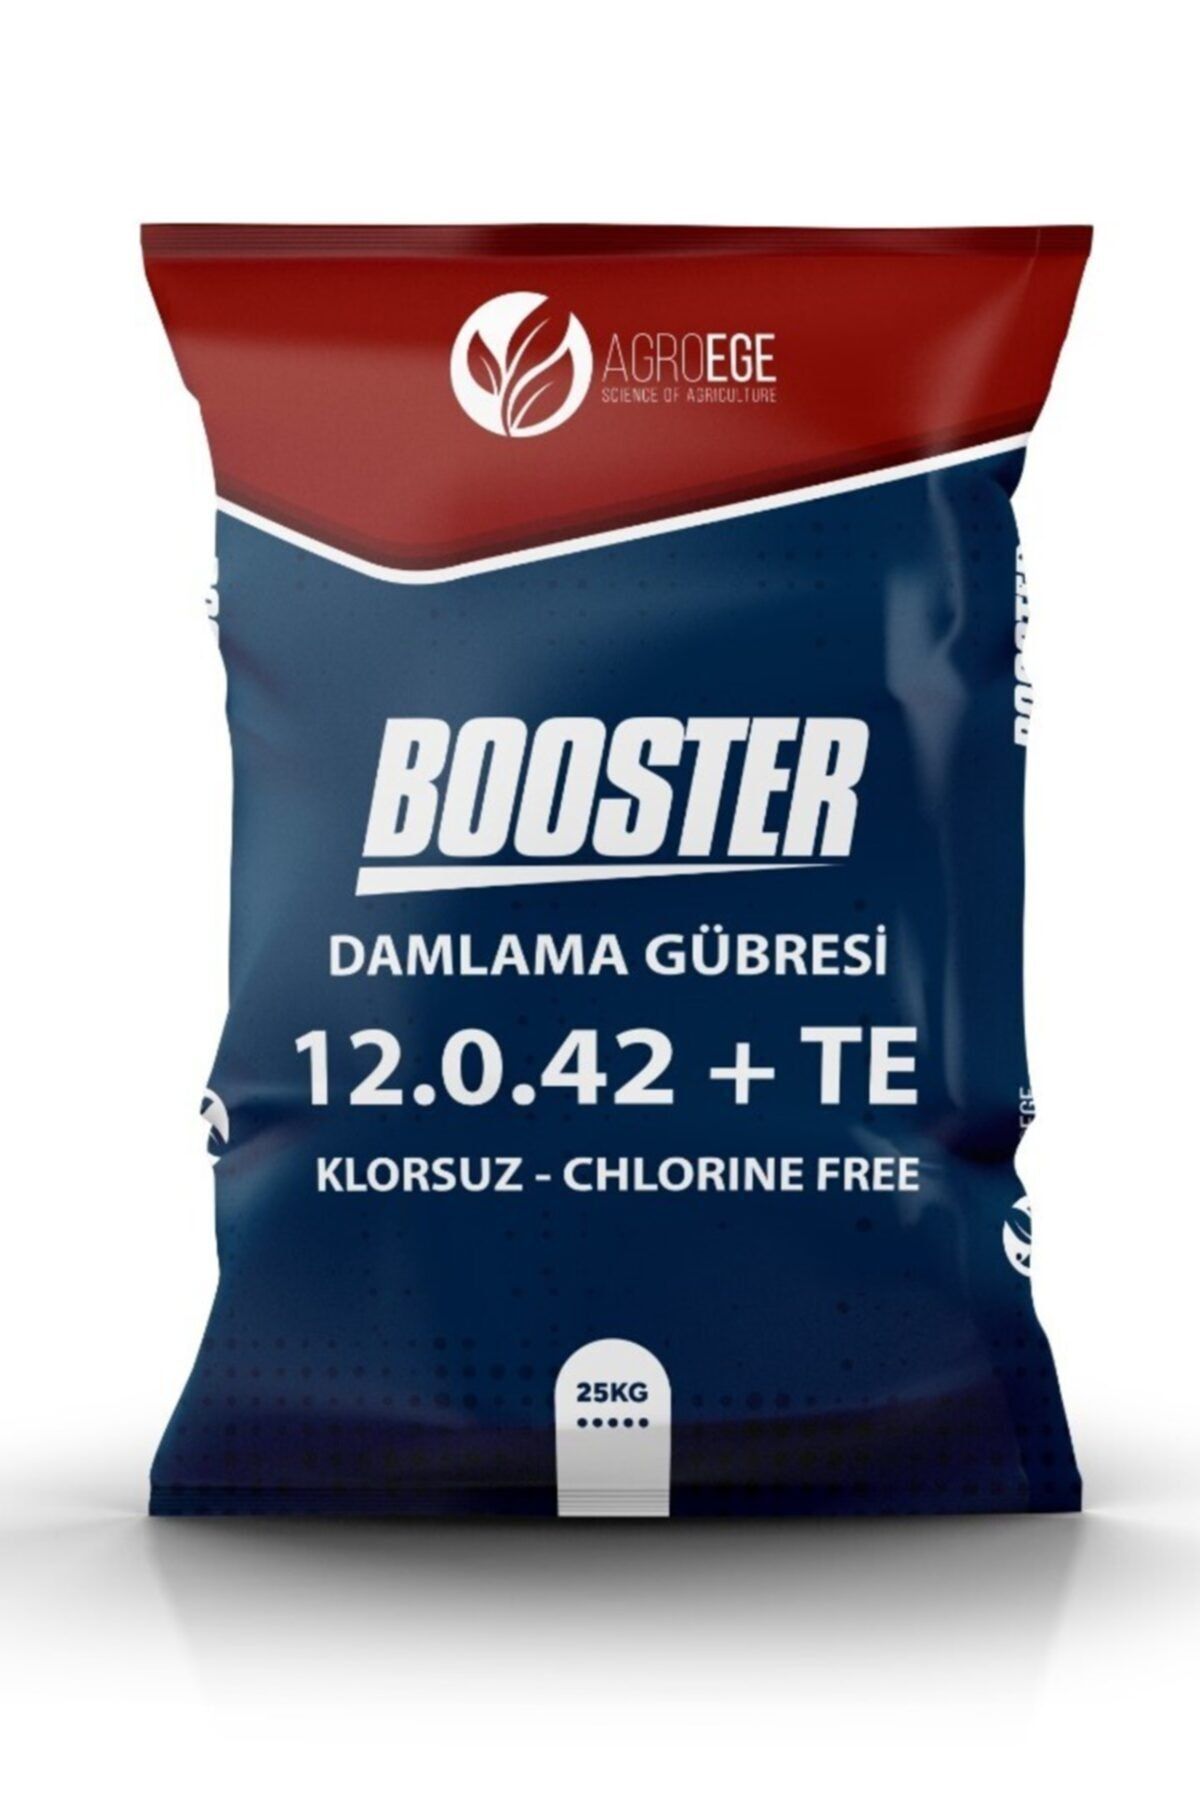 AGROEGE Booster 12-0-42 +me Klorsuz Damlama Gübresi Potasyum